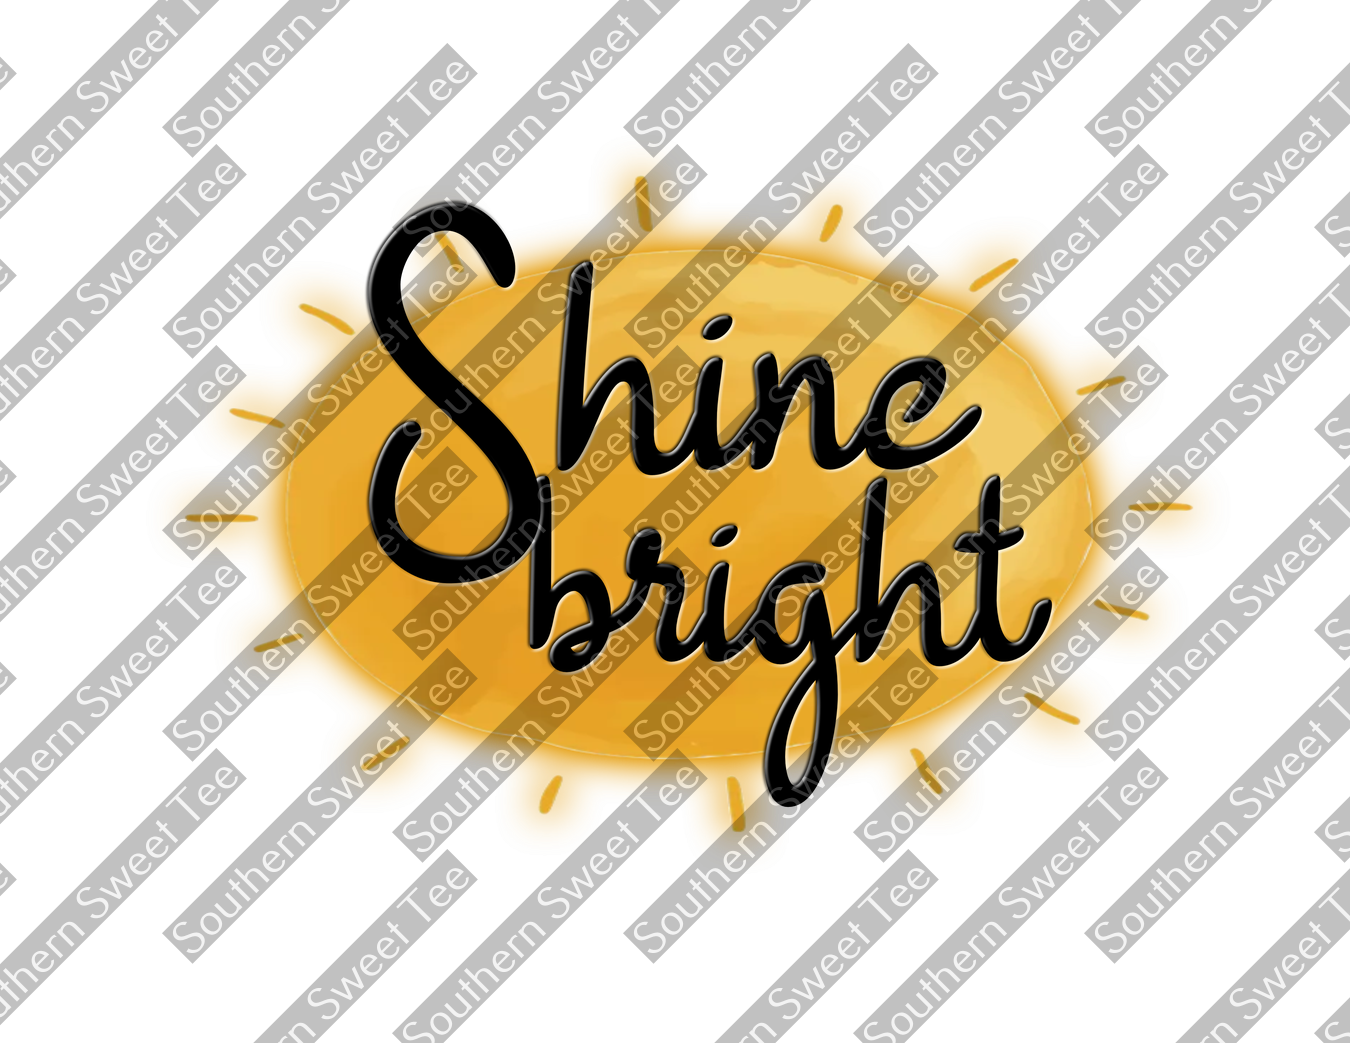 shine bright .bnb